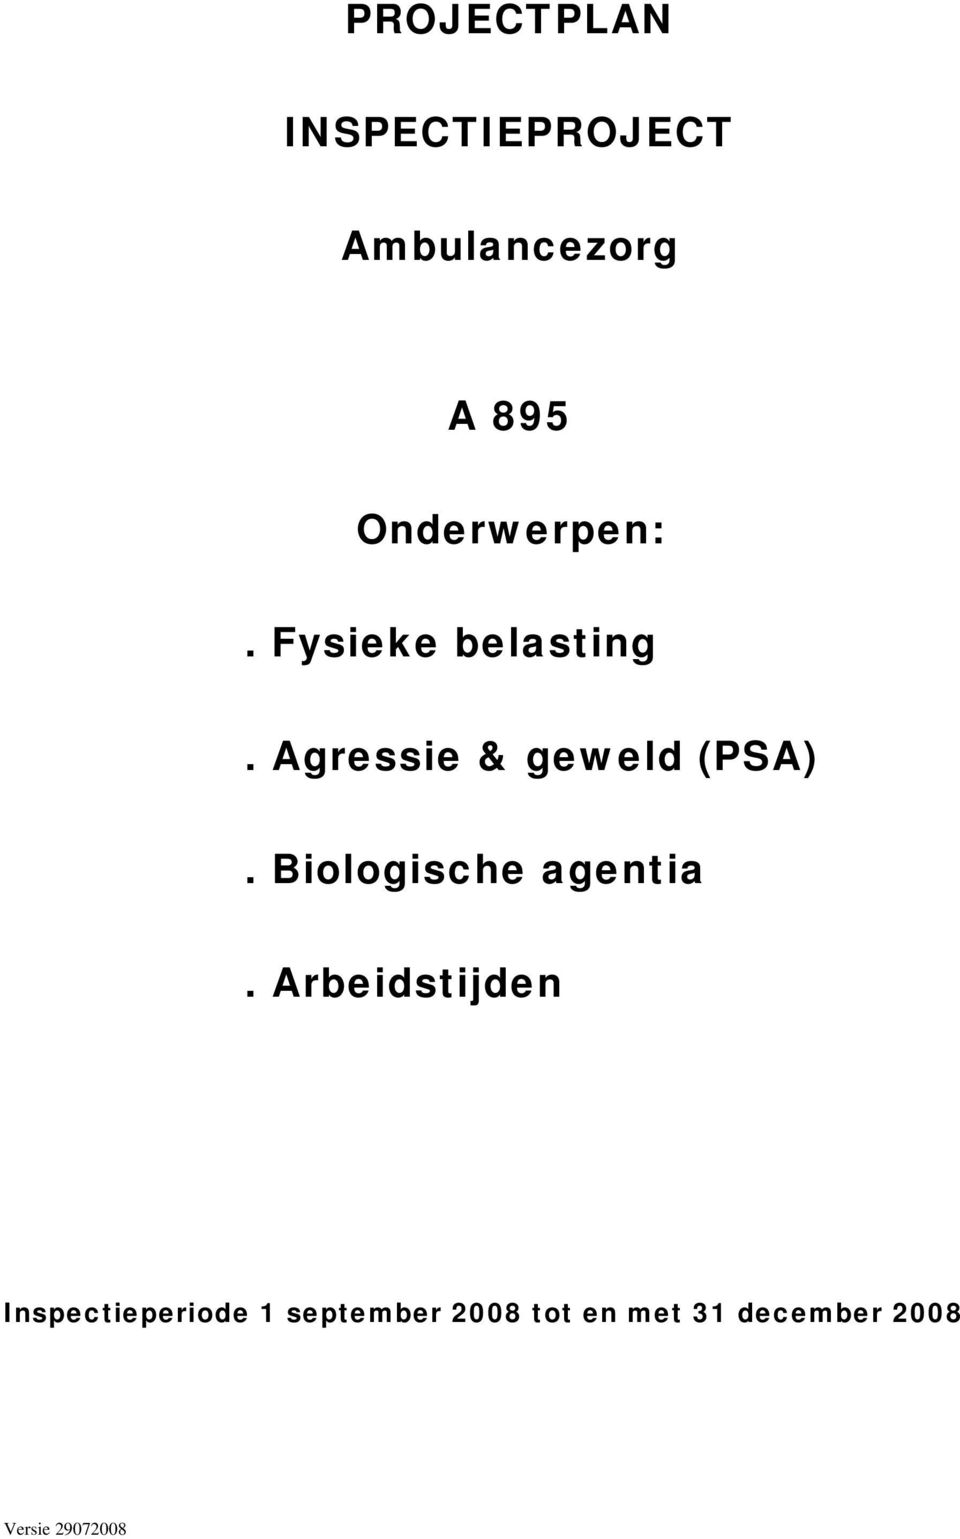 Agressie & geweld (PSA). Biologische agentia.